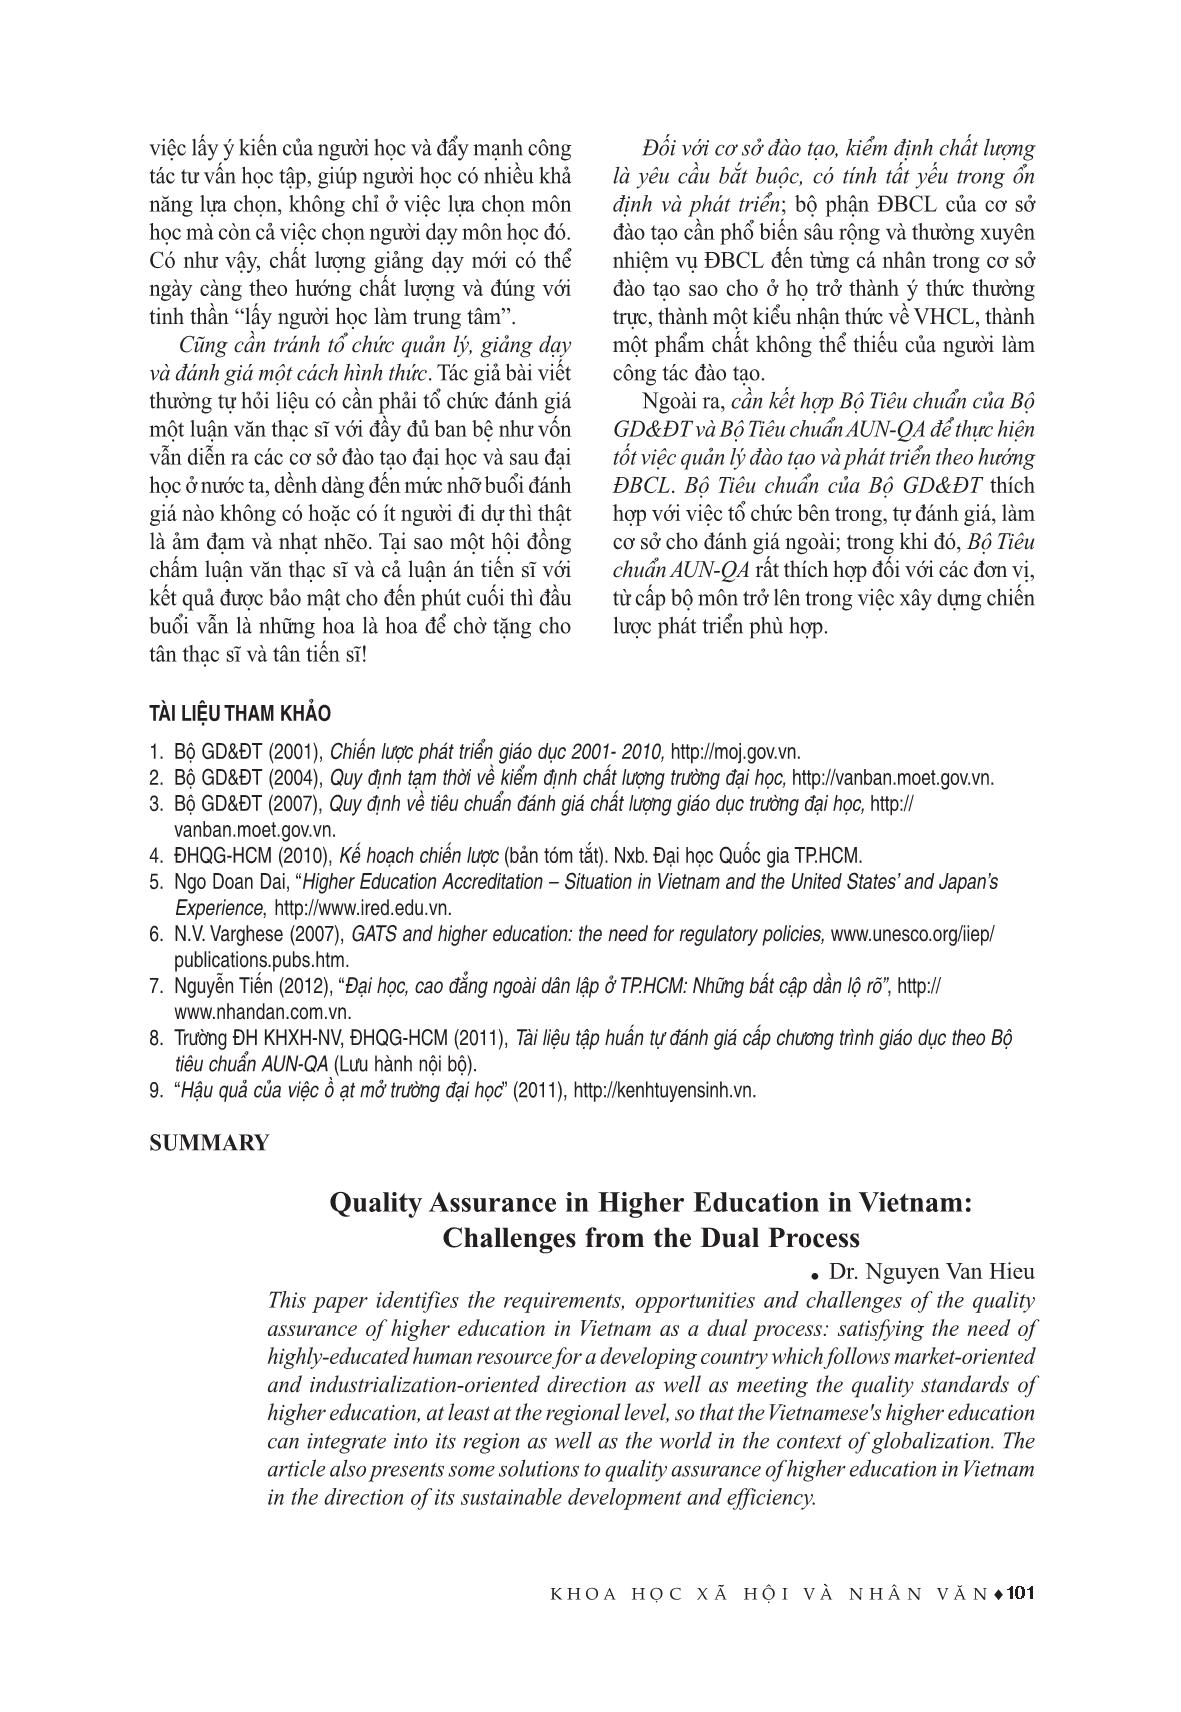 Đảm bảo chất lượng giáo dục Đại học ở Việt Nam: Những thách thức từ quá trình kép trang 5